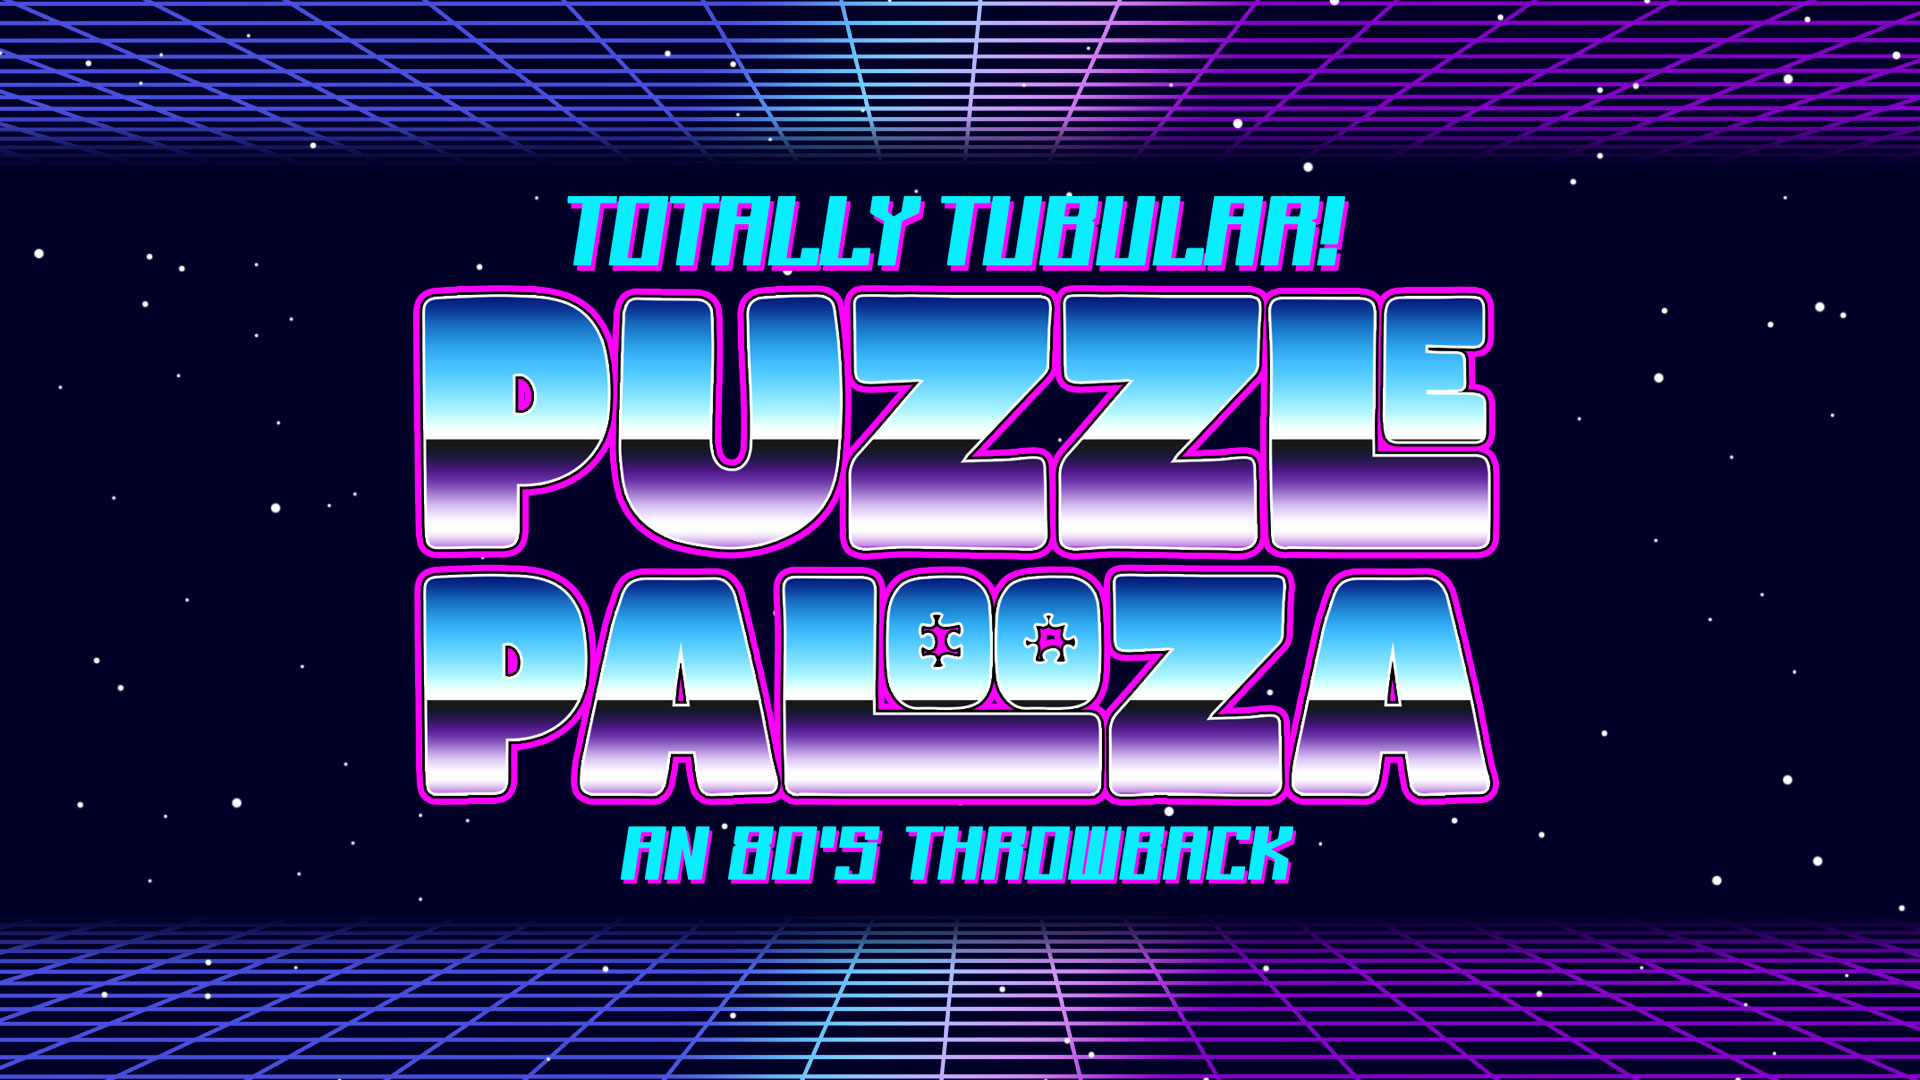 Totally Tubular A Puzzlepalooza 80's Throwback Event Image